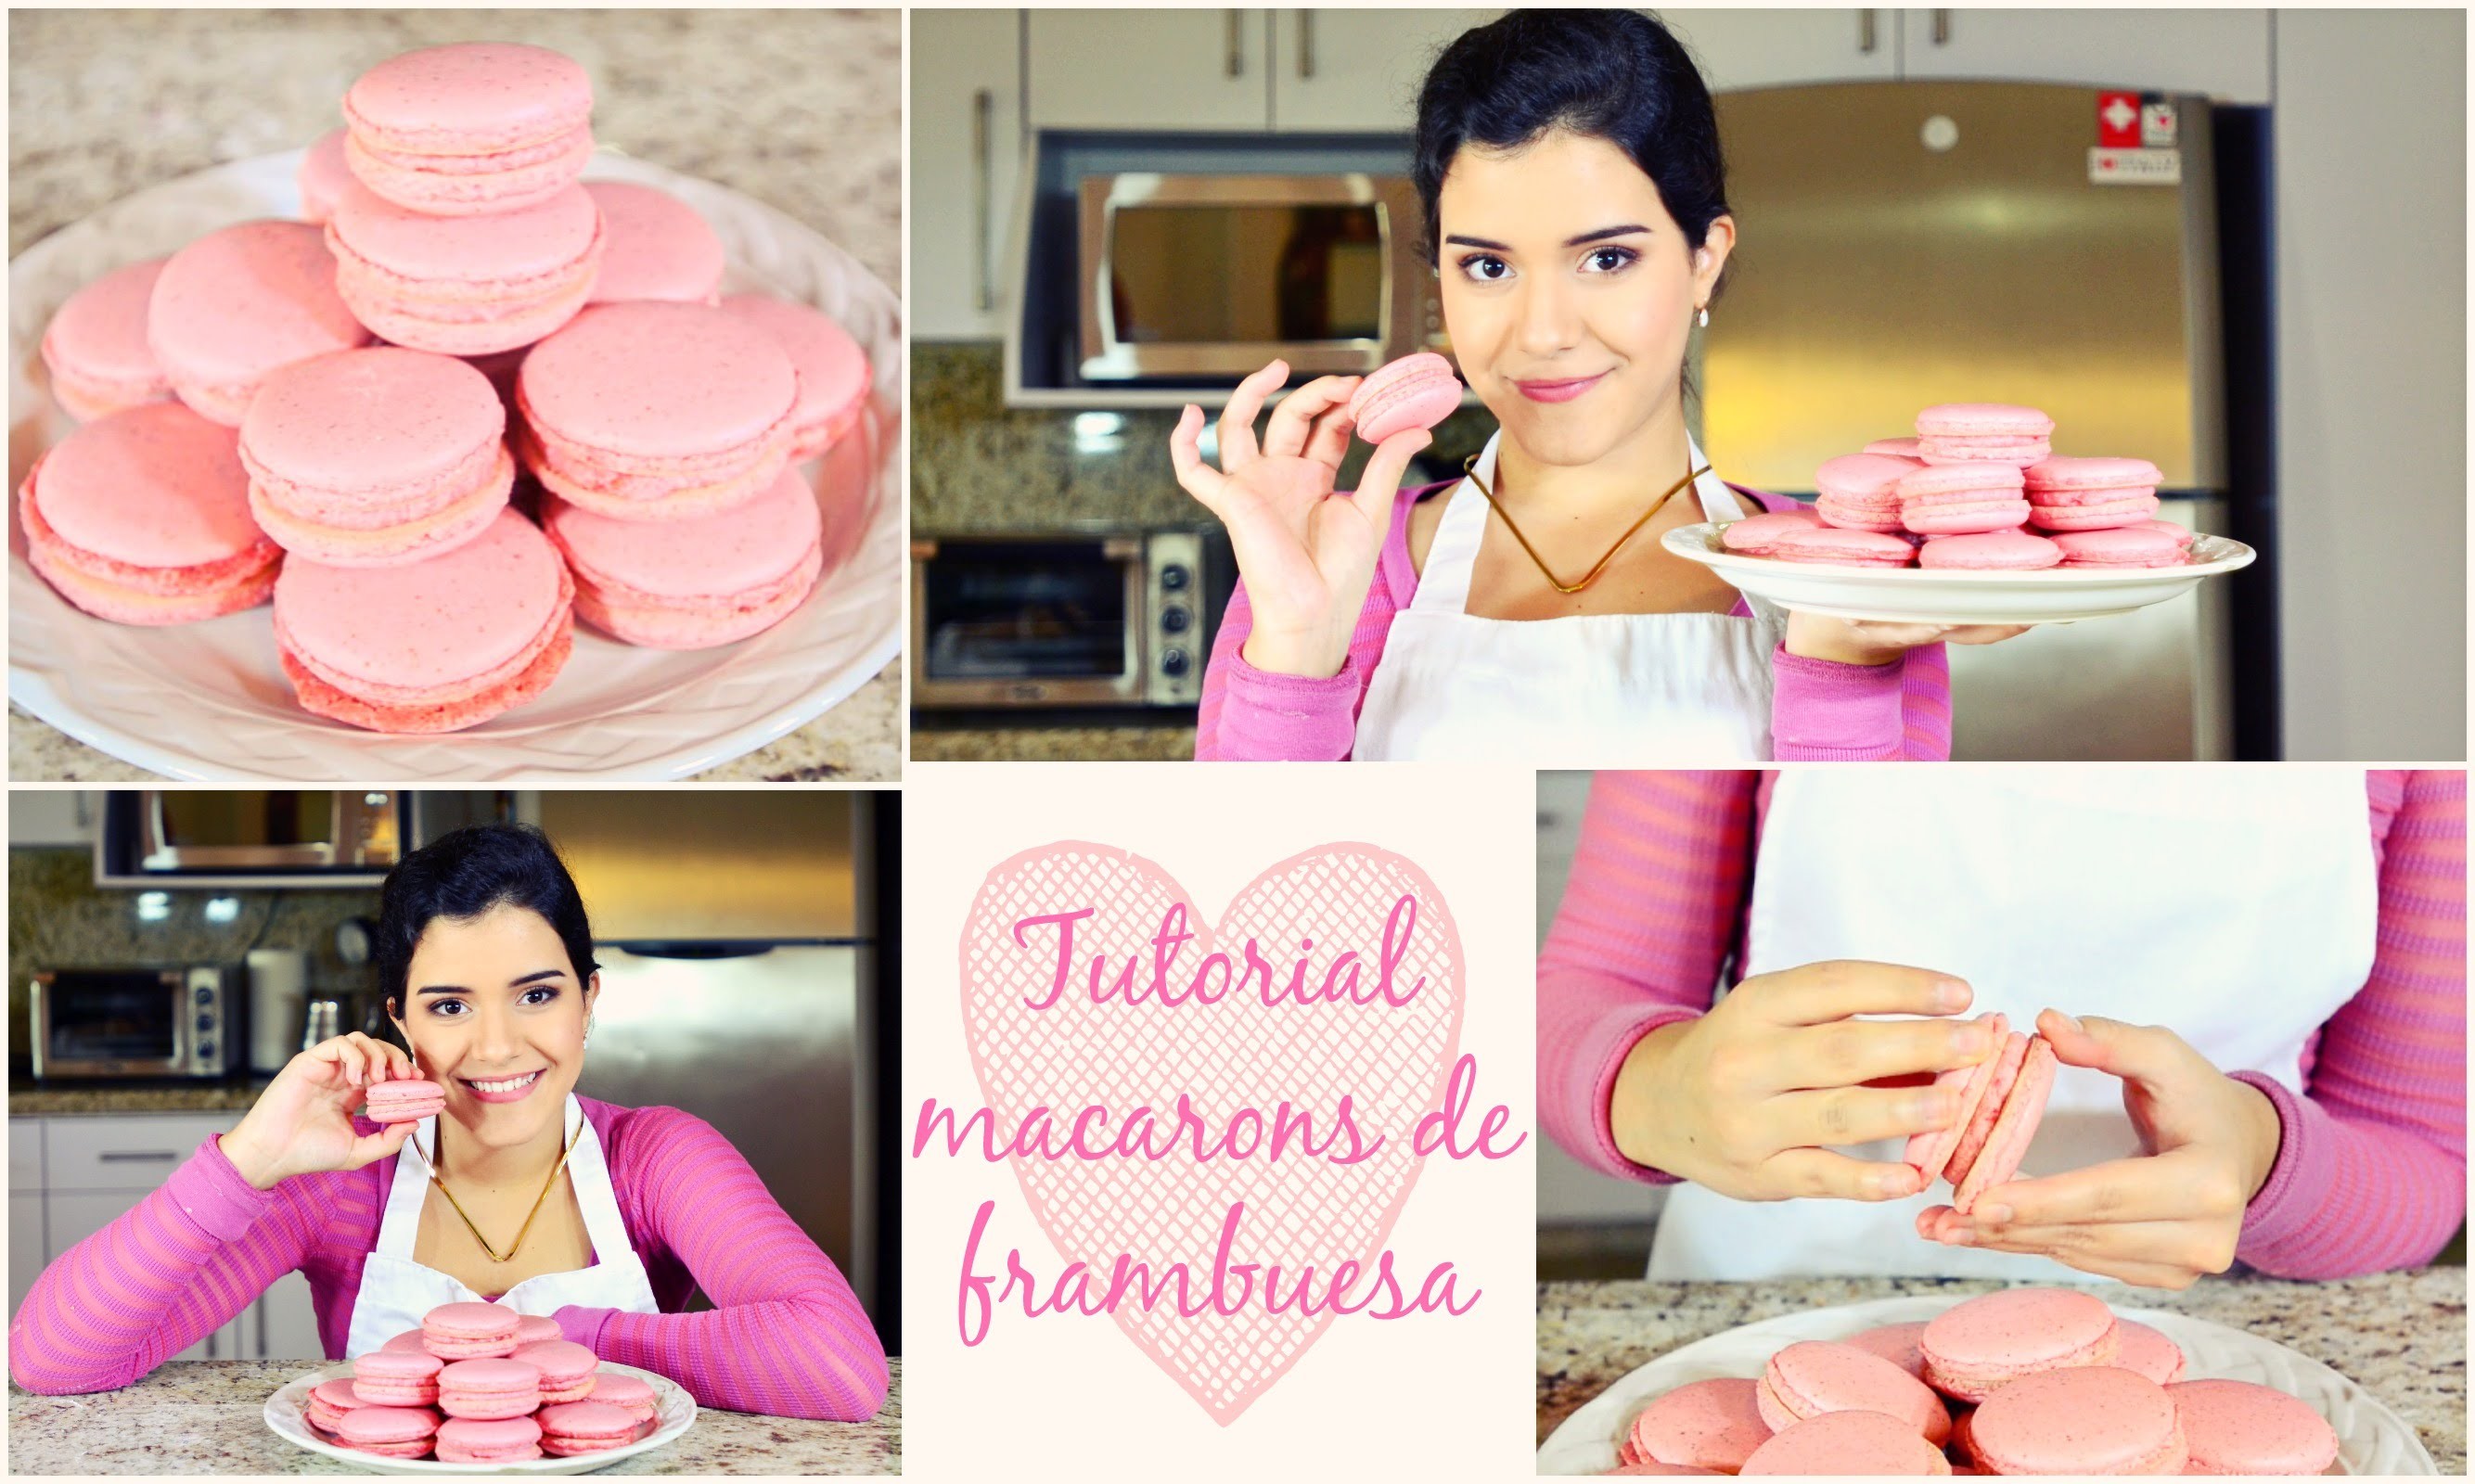 Cómo hacer macarons franceses de frambuesa (Idea de regalo)